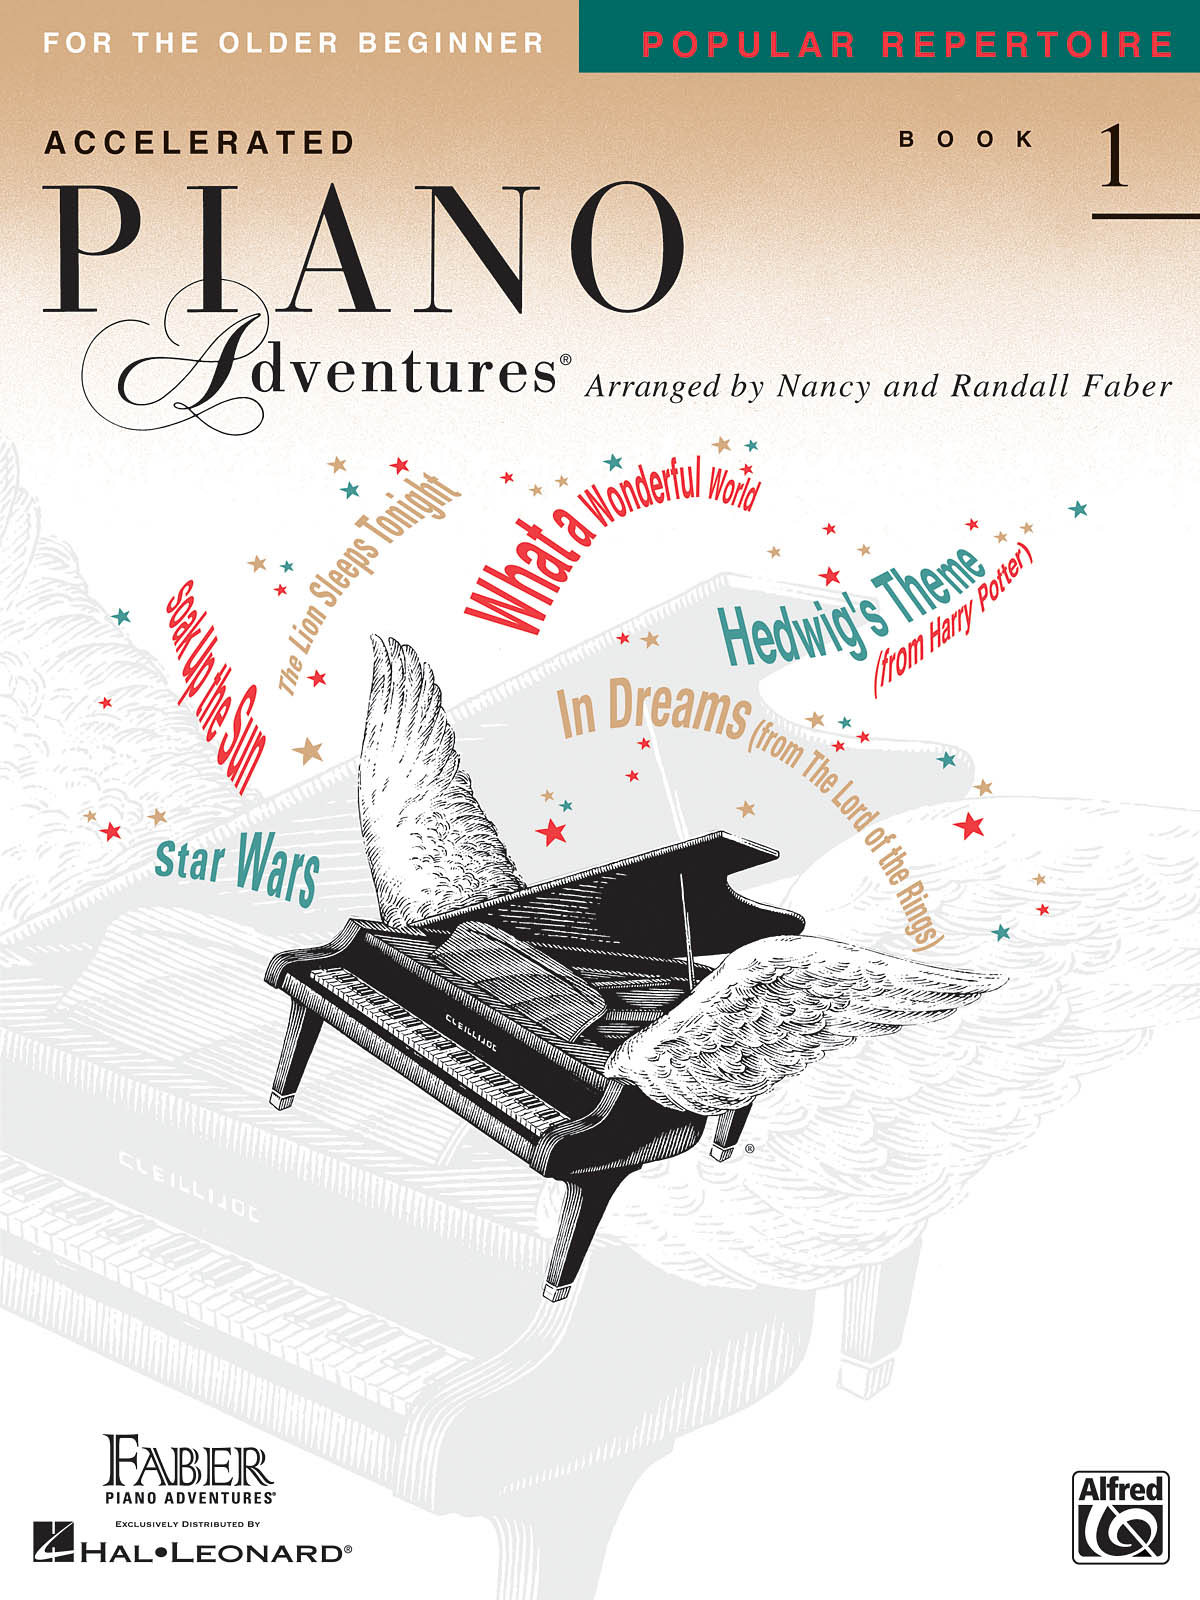 Accelerated Piano Adventures: Popular Repertoire Book 1